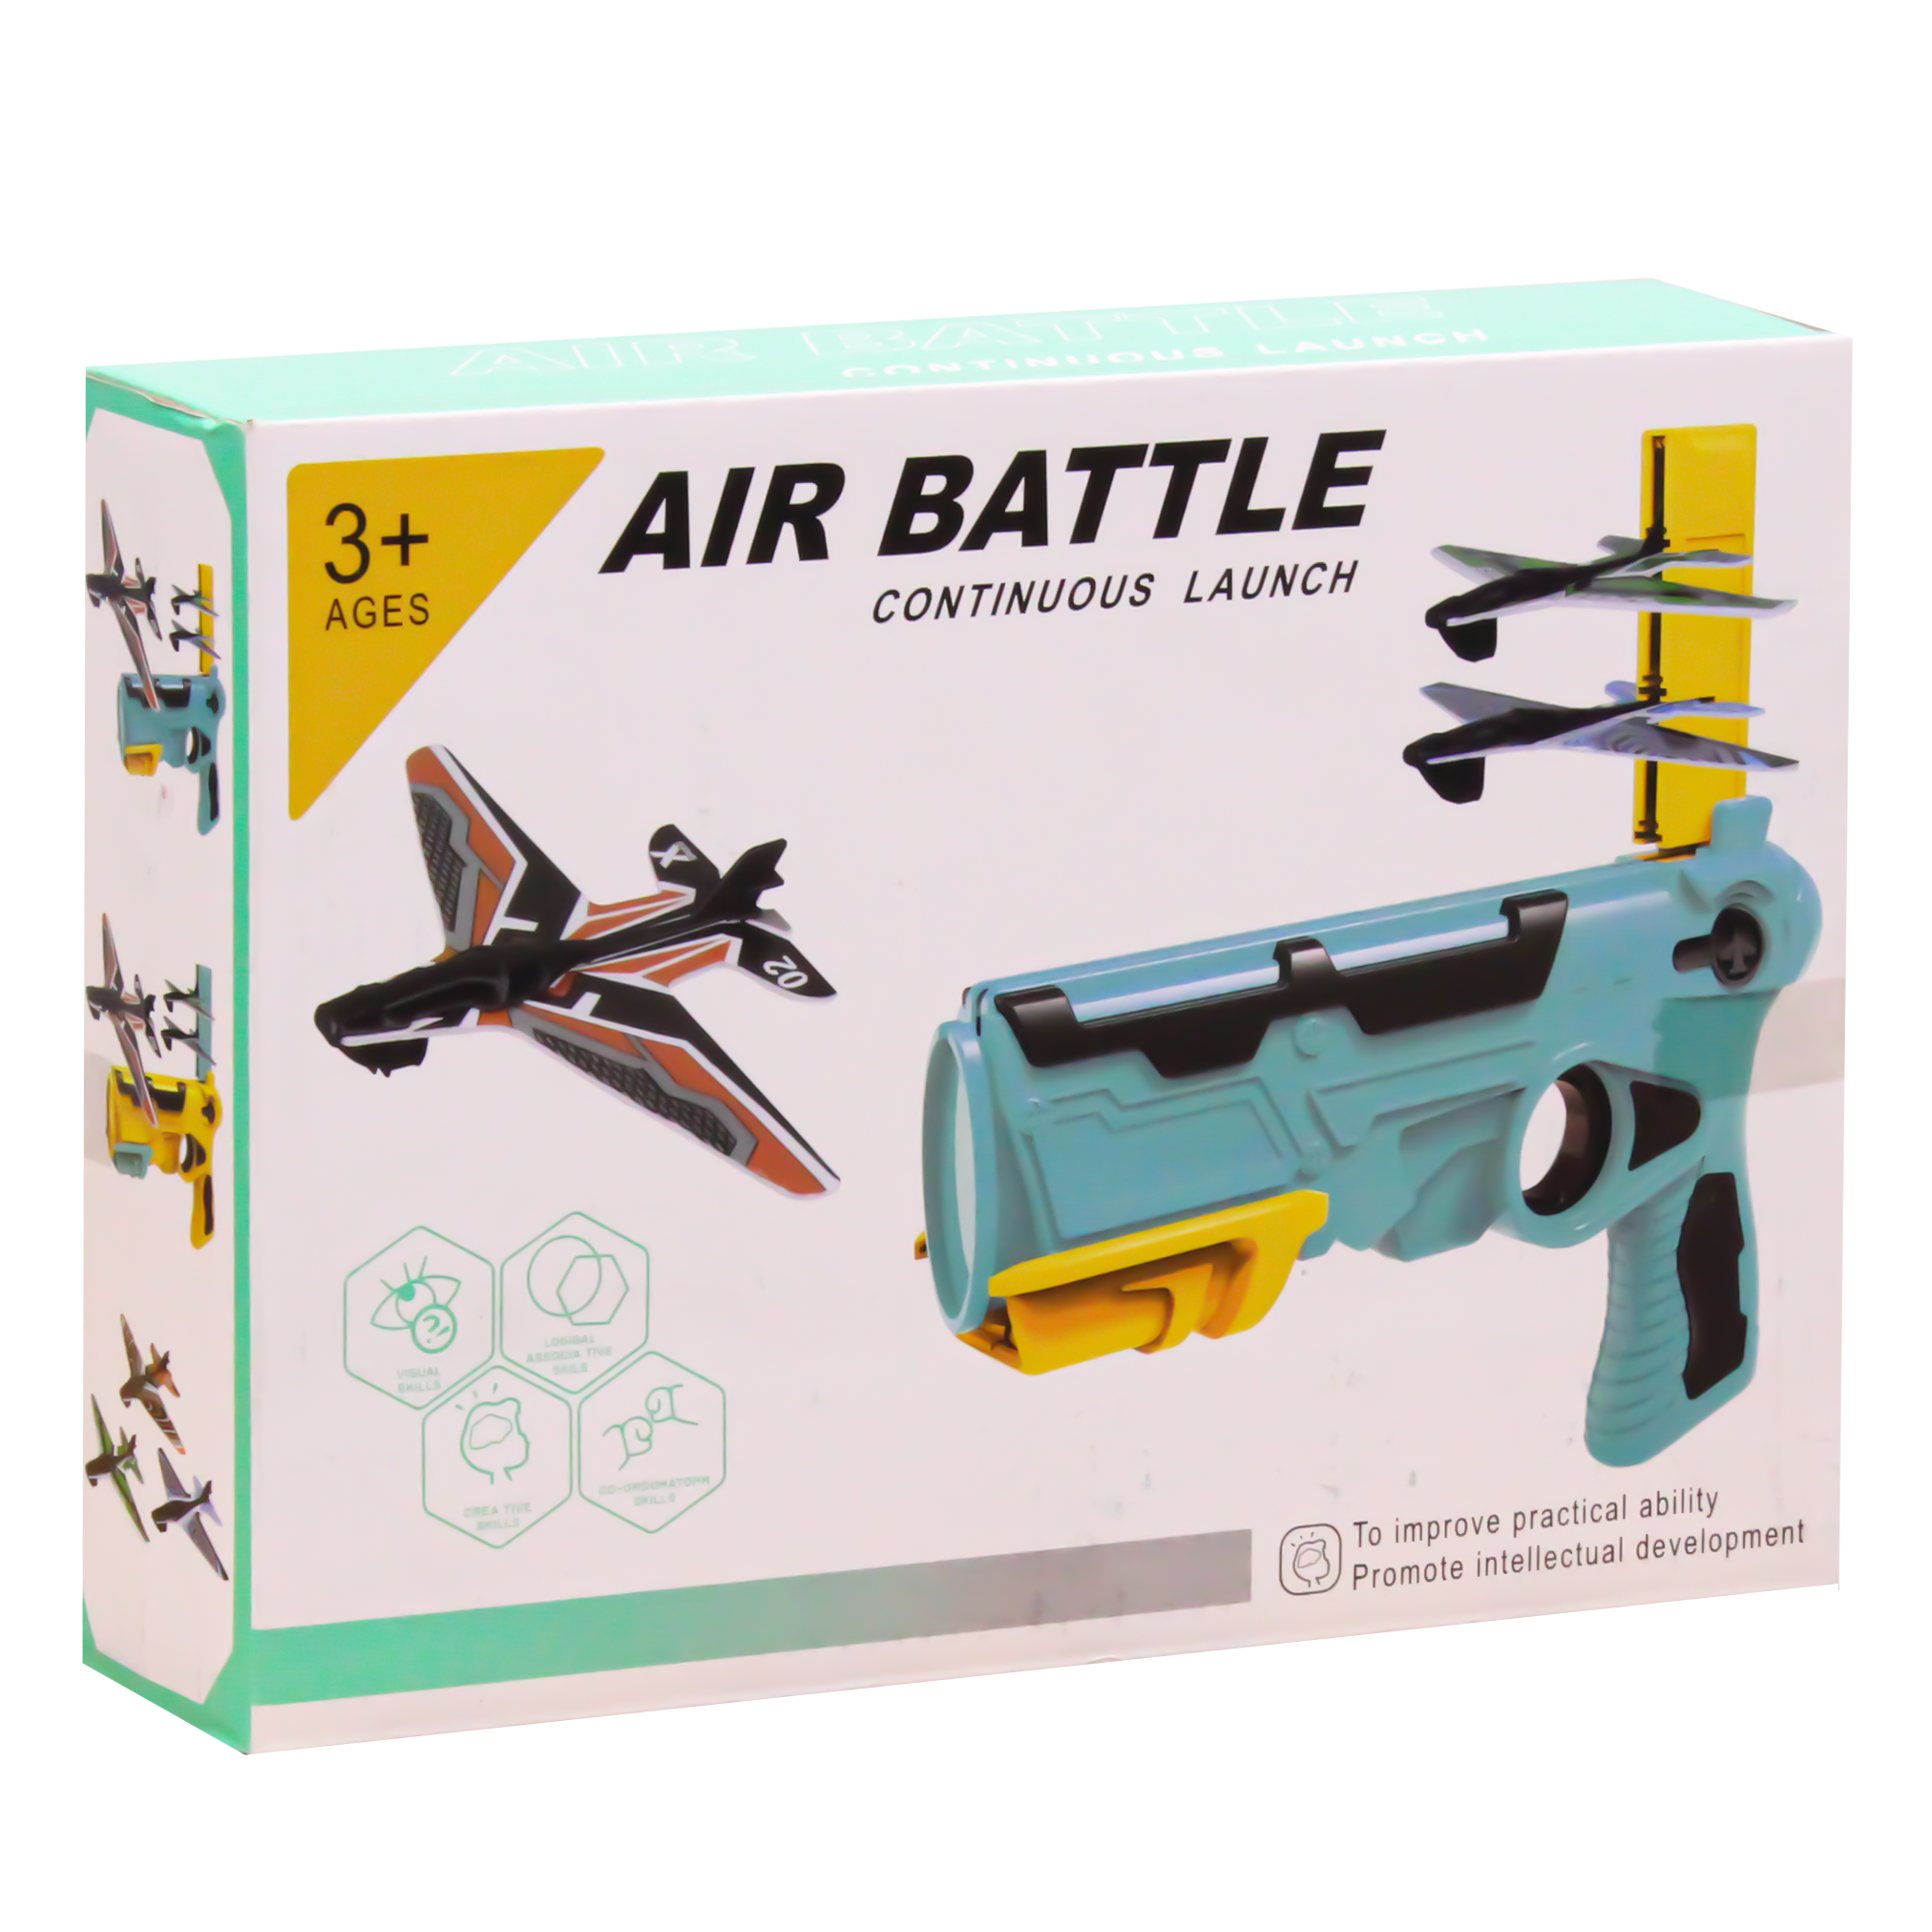 Air Battle Continuous Launch Catapult Plane Toy - Multicolor